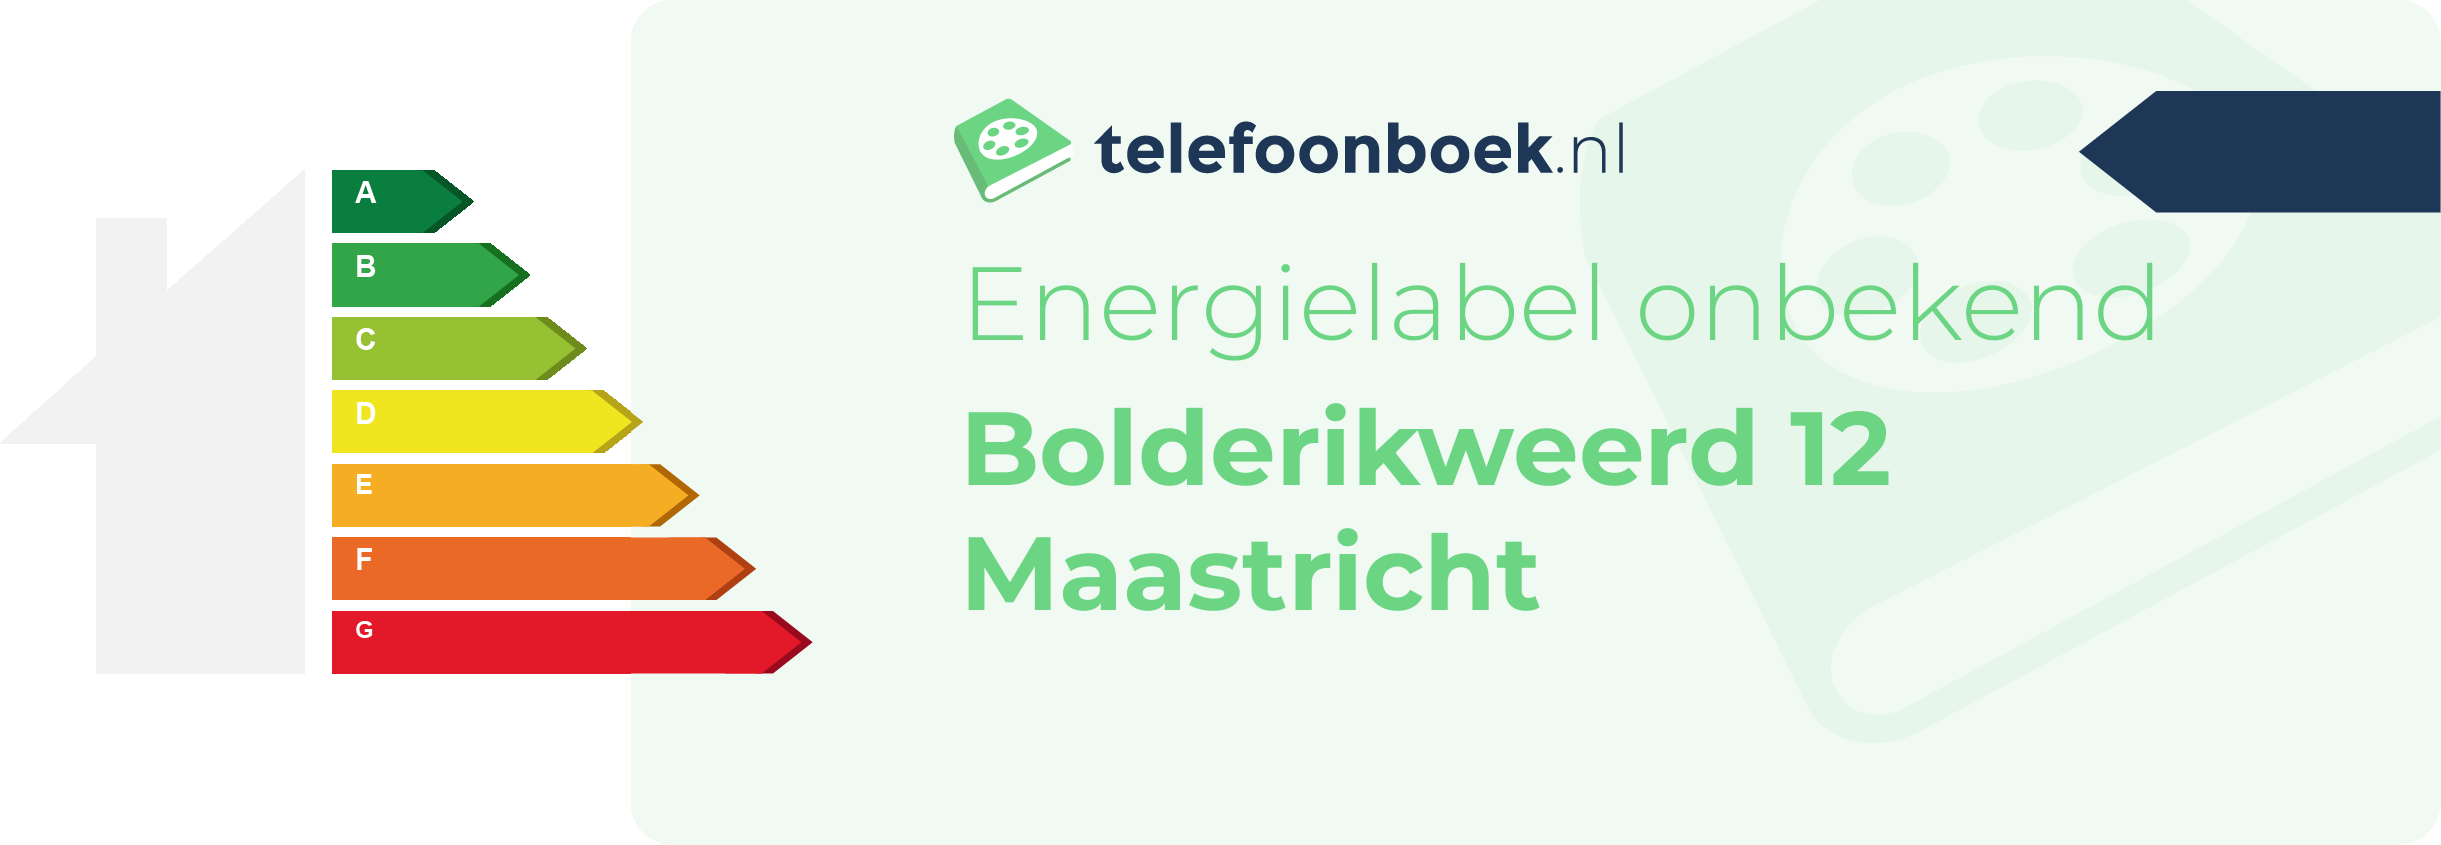 Energielabel Bolderikweerd 12 Maastricht